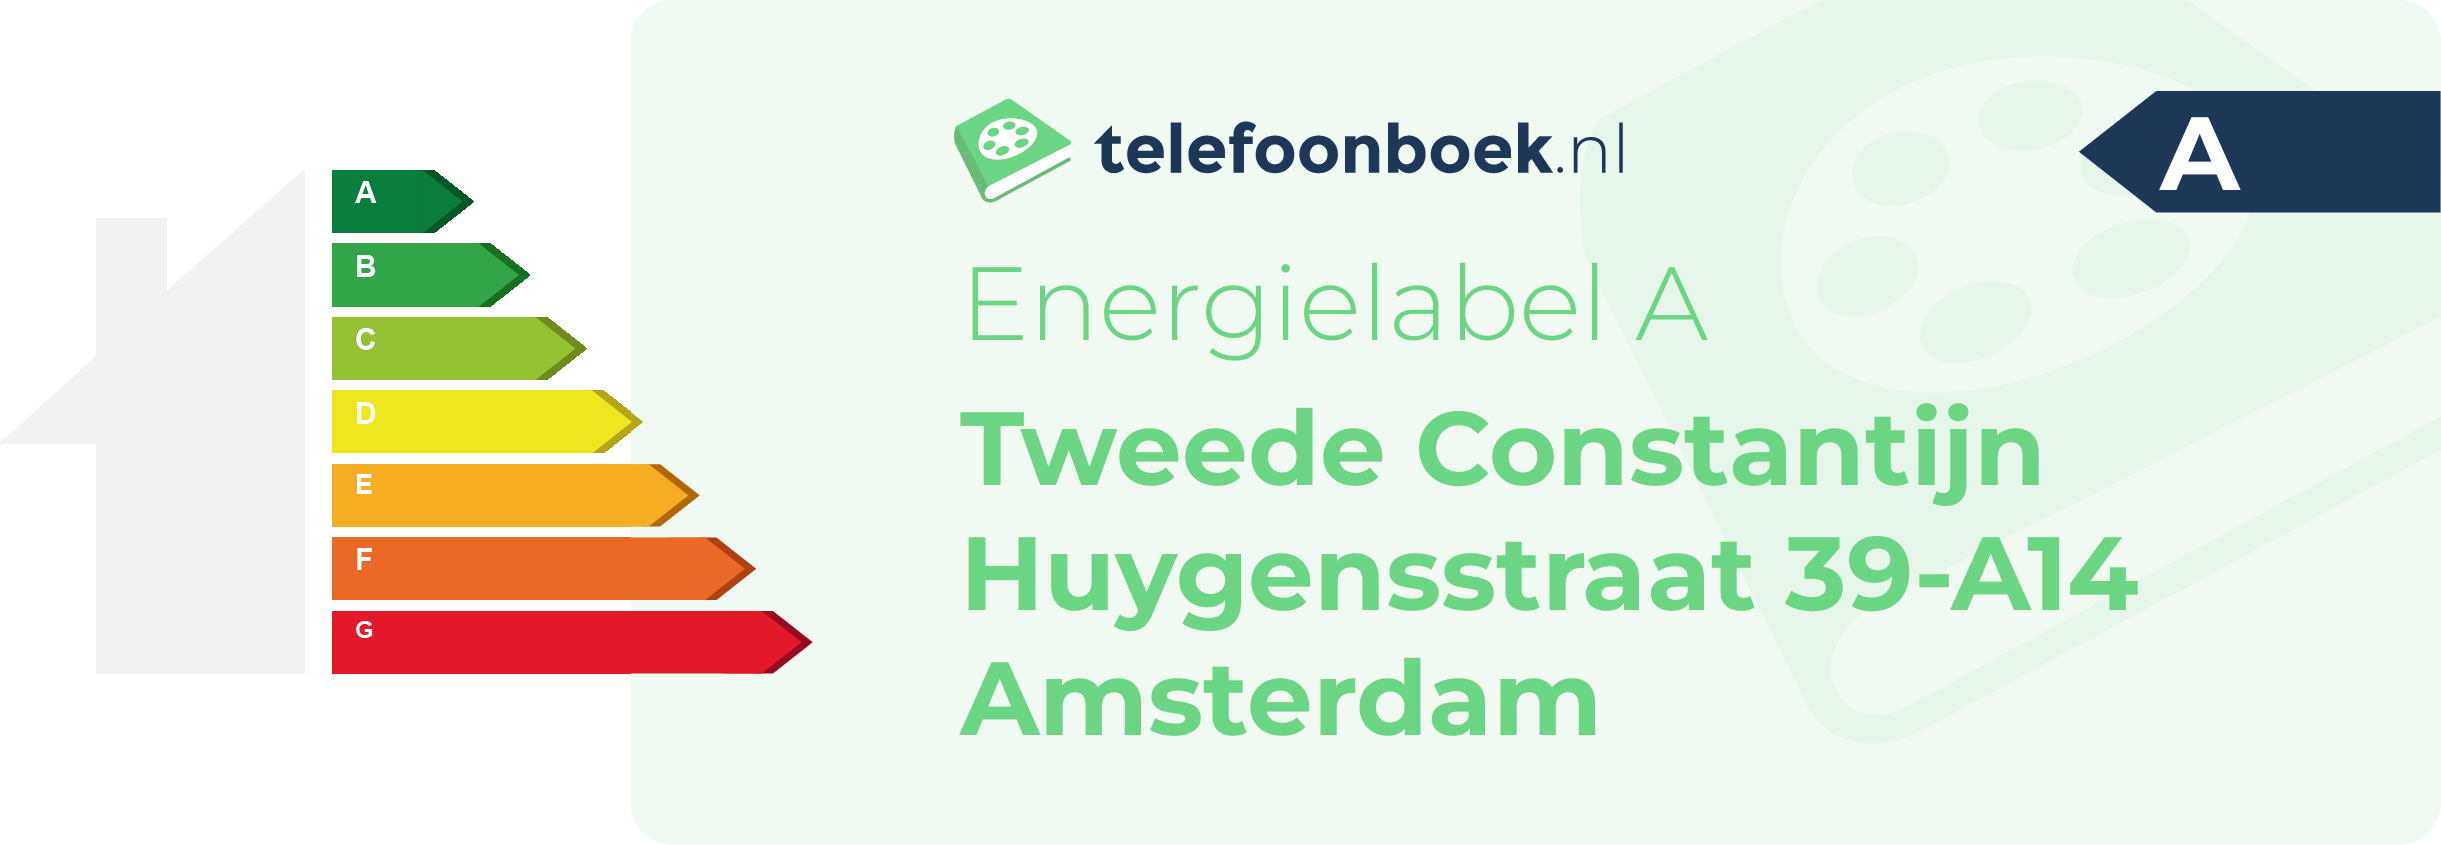 Energielabel Tweede Constantijn Huygensstraat 39-A14 Amsterdam